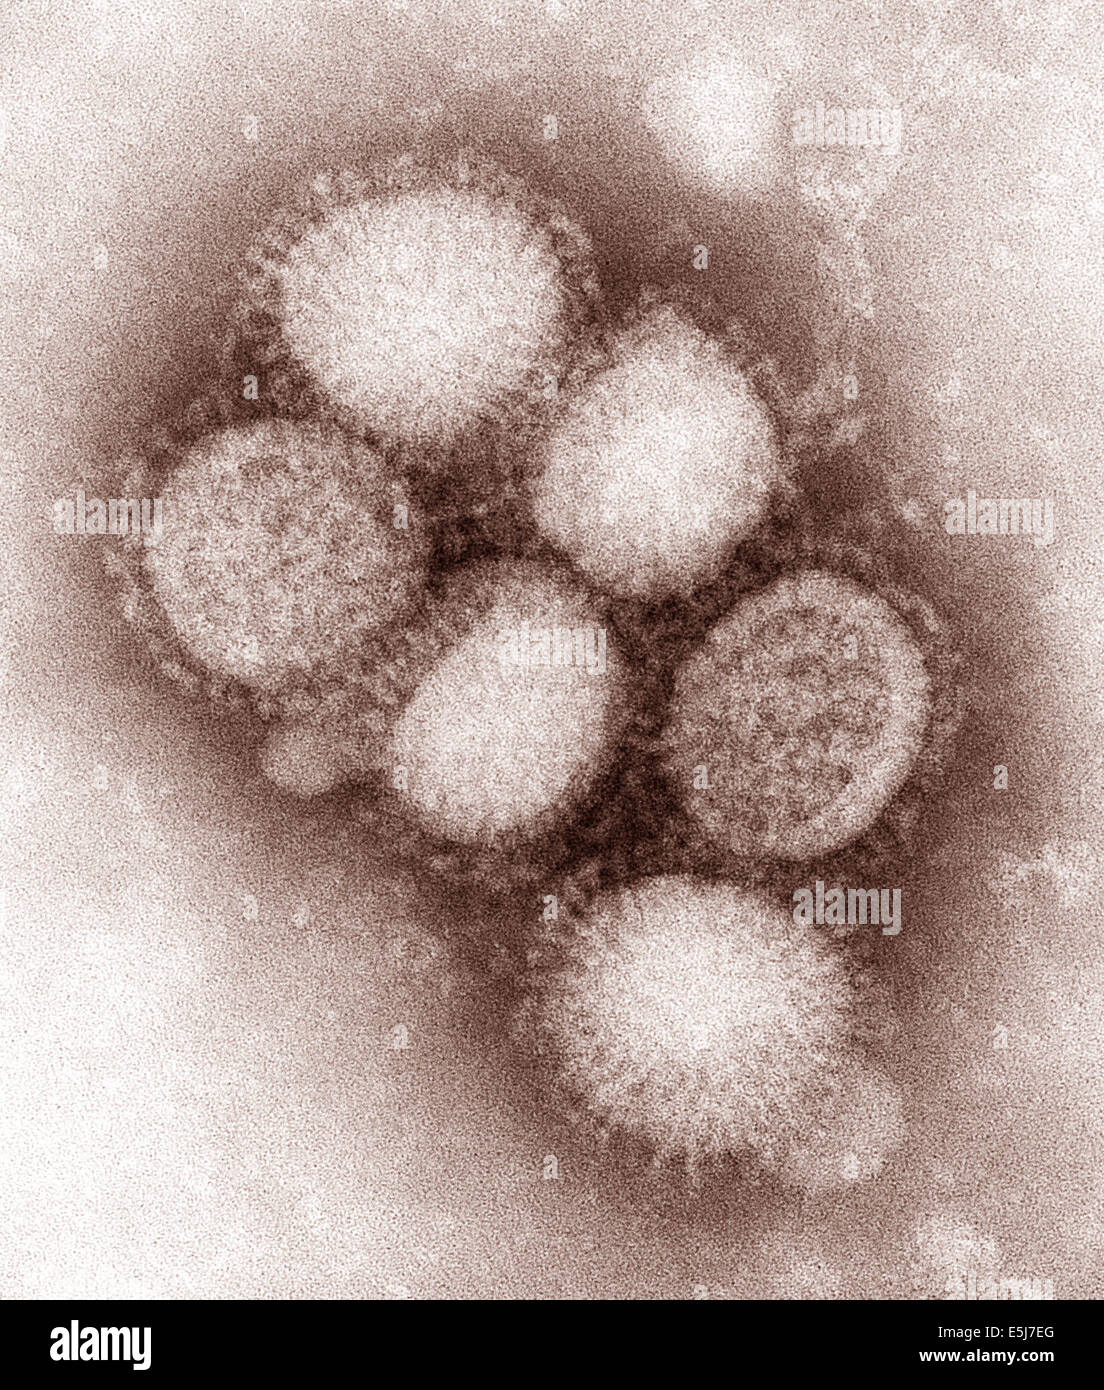 Il virus H1N1 che ha causato una pandemia è ora un regolare umana virus influenzale e continua a circolare stagionalmente in tutto il mondo. Dagli archivi di stampa Ritratto servizio. Foto Stock